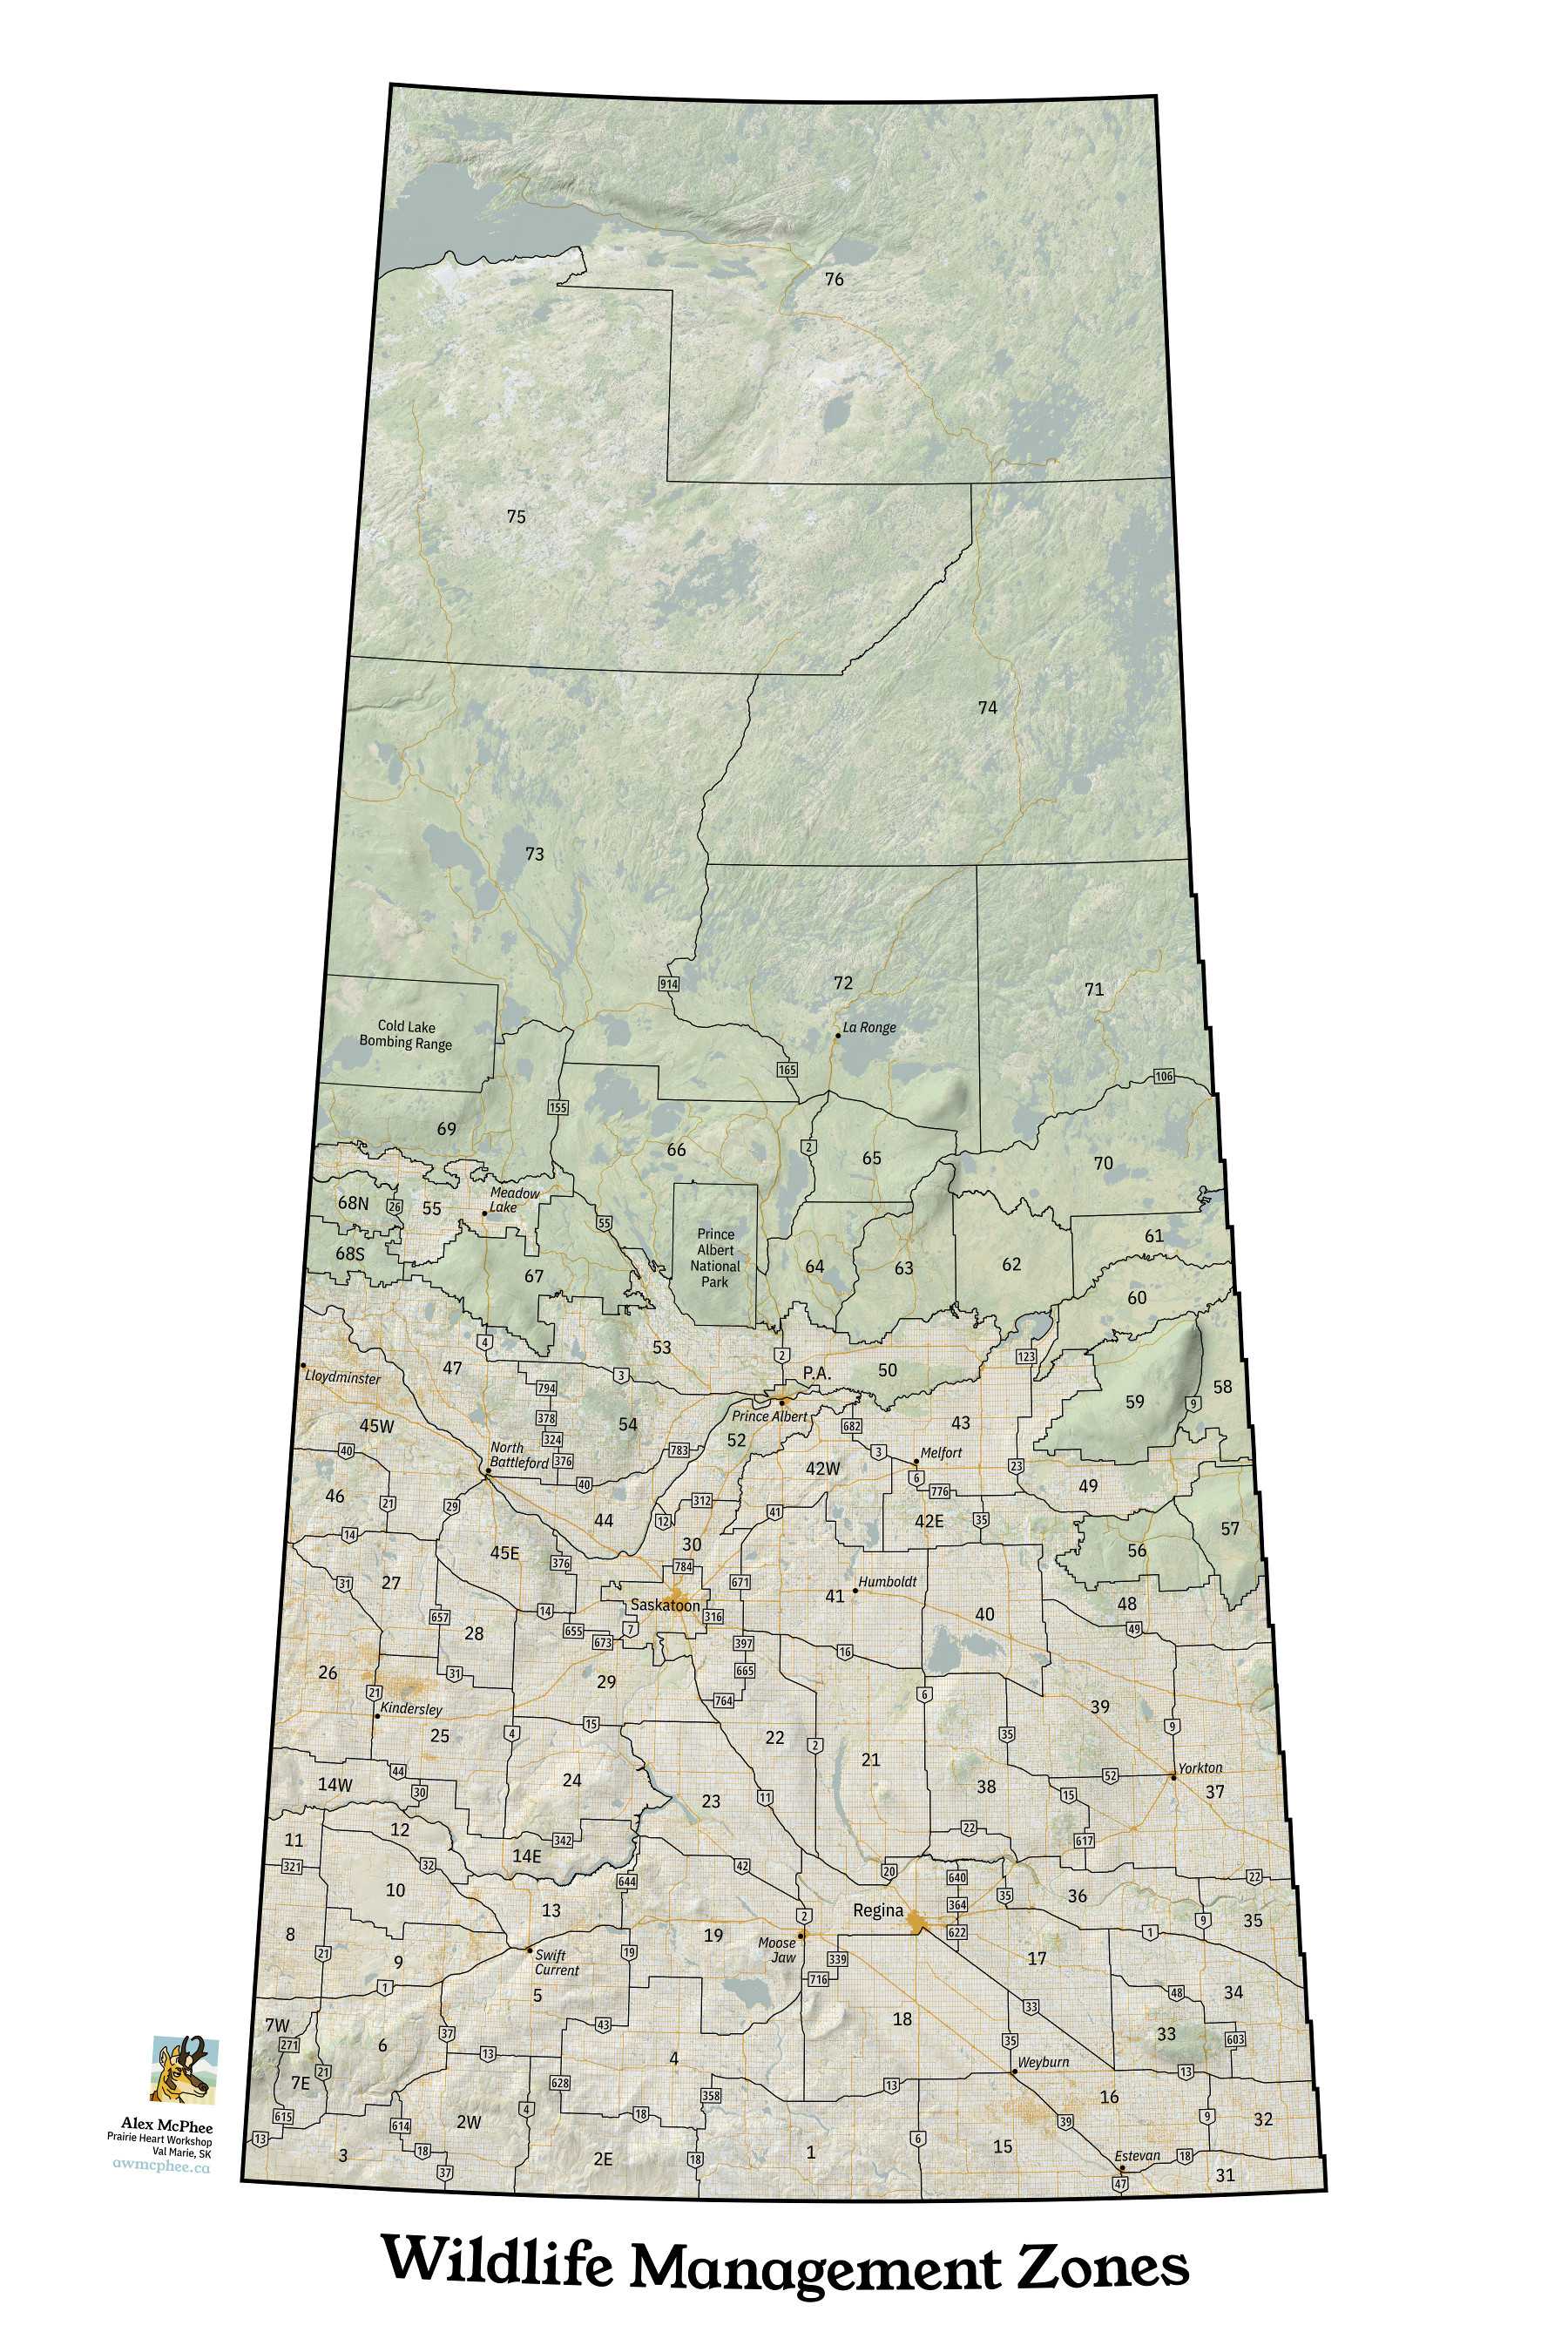 A map of Wildlife Management Zones in Saskatchewan.